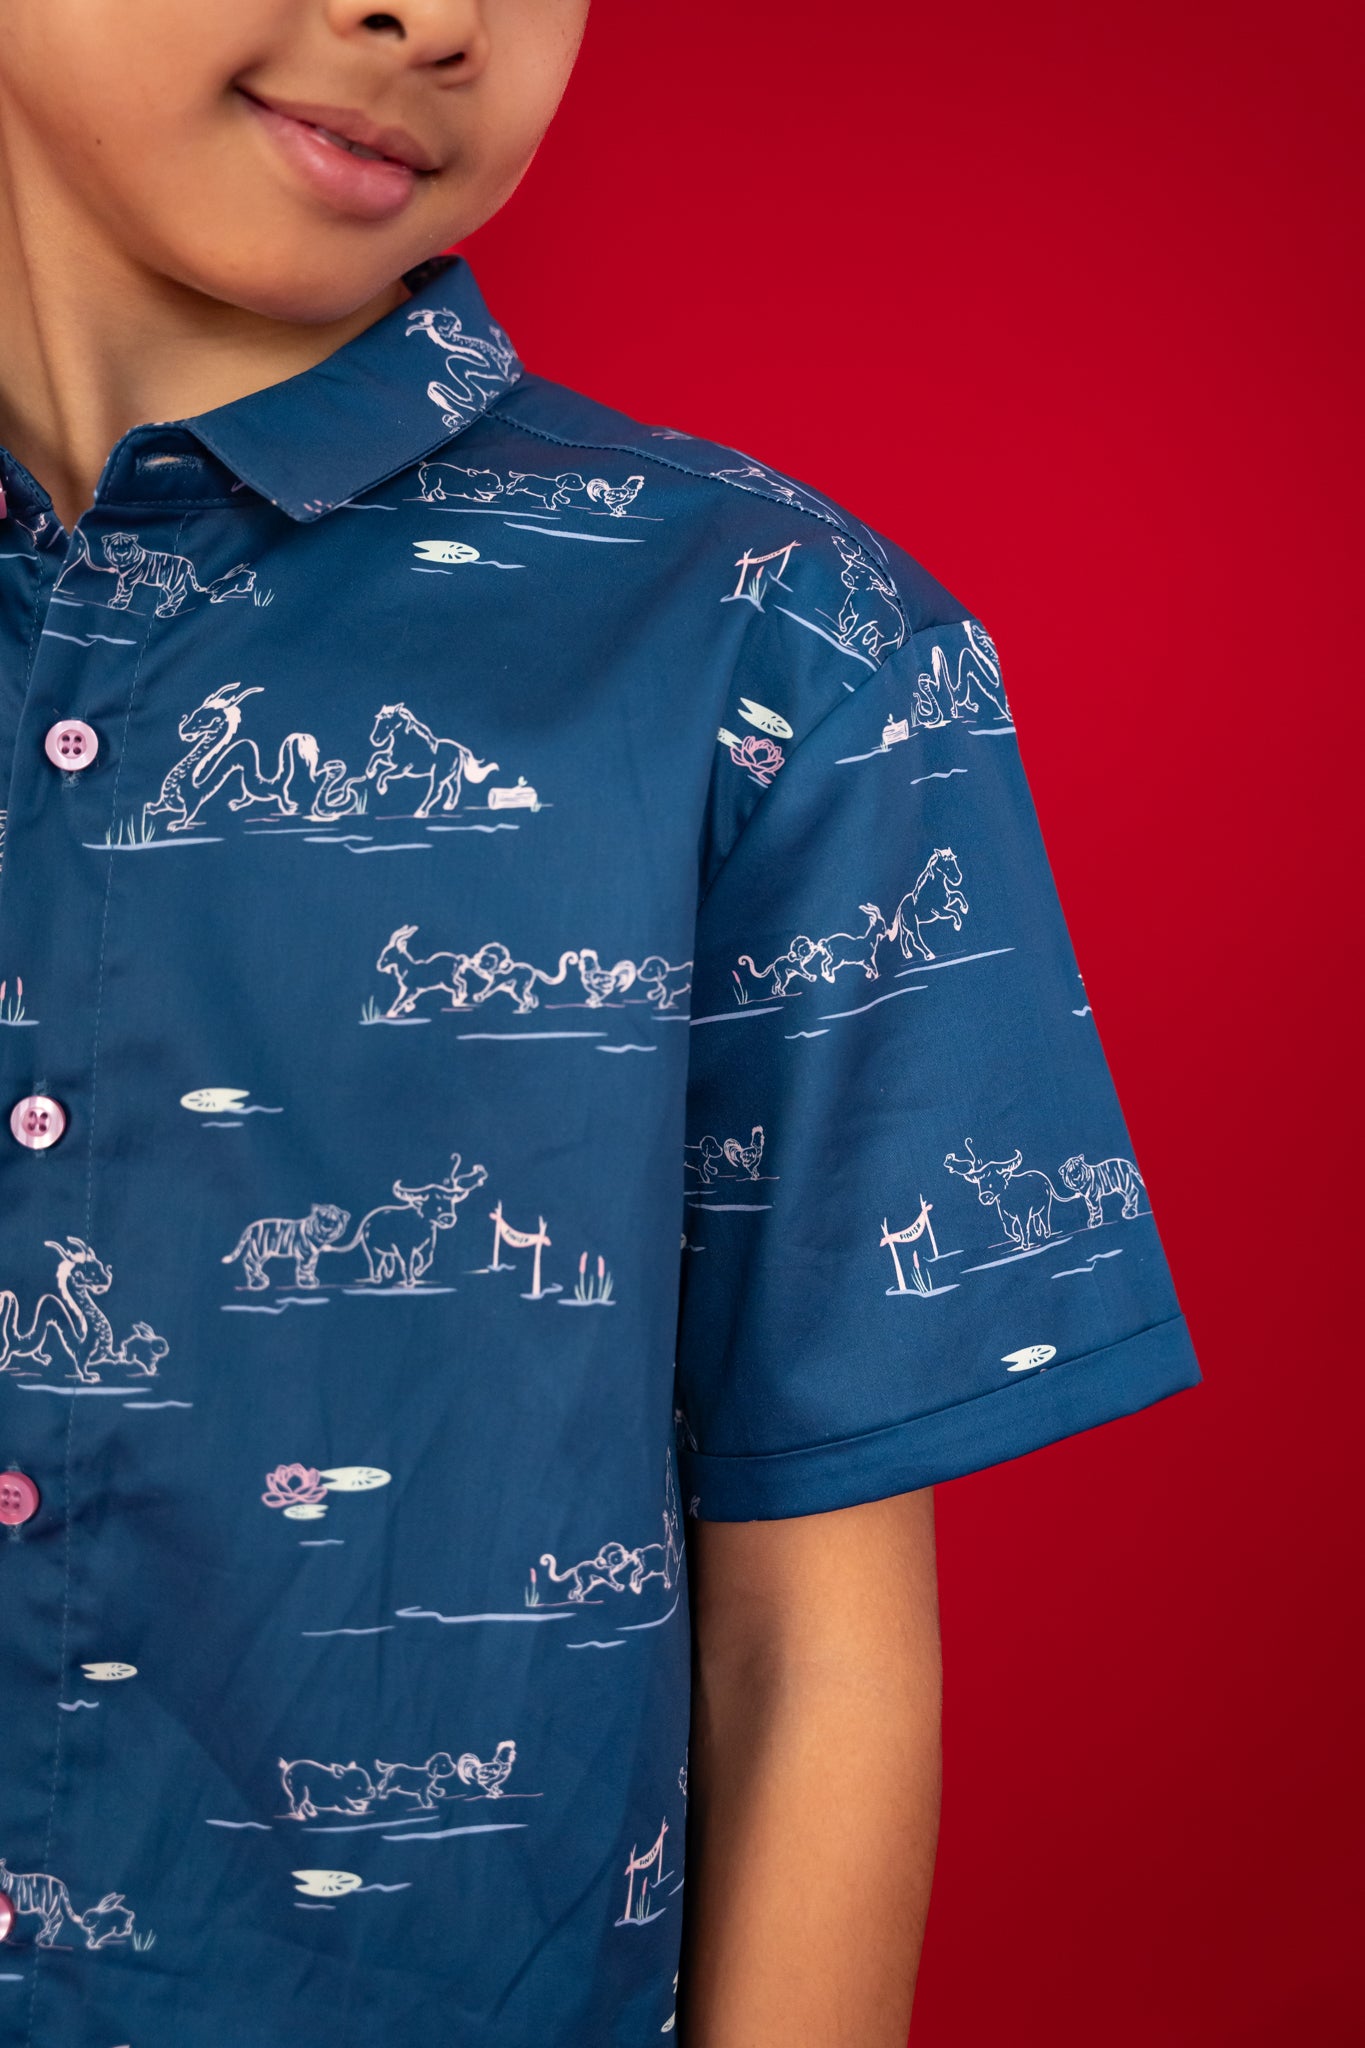 Little Man Shirt - Blue Zodiac Race